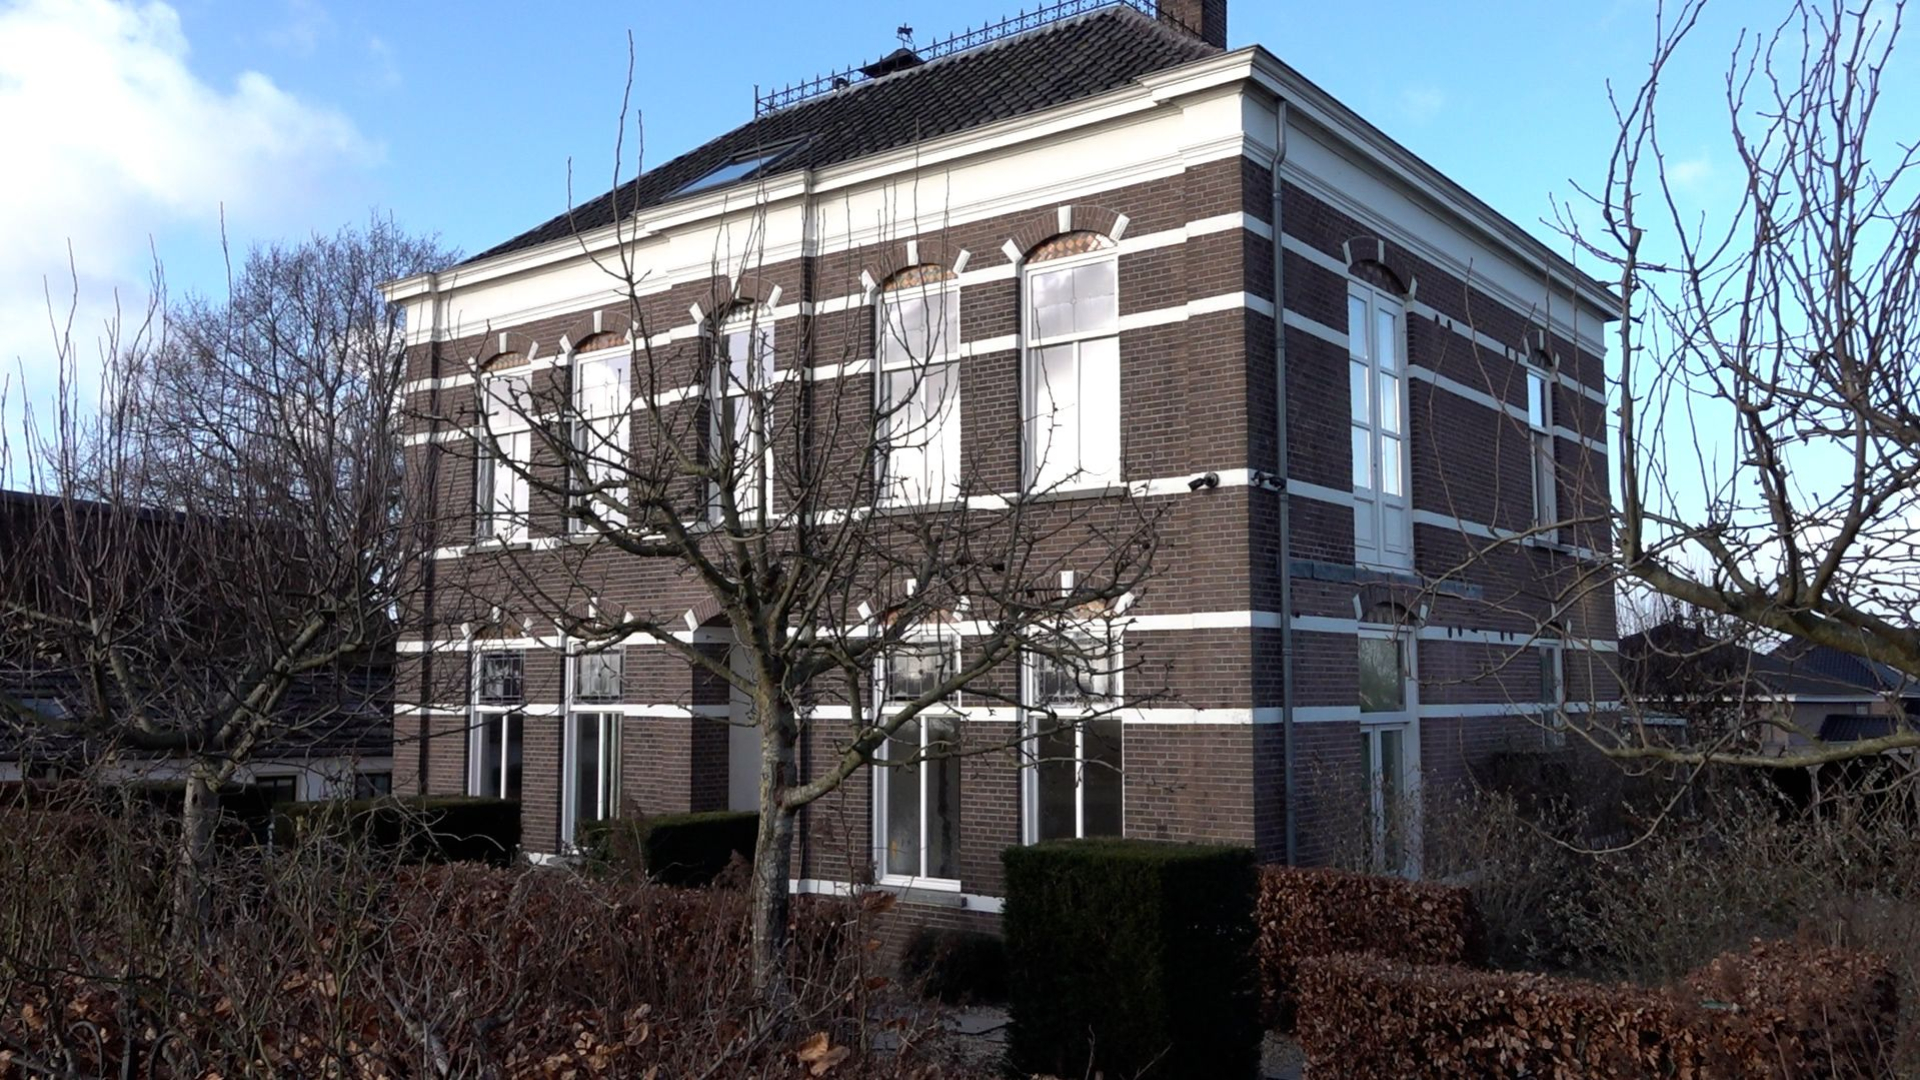 Contract kost gemeente West Maas en Waal 1,8 miljoen